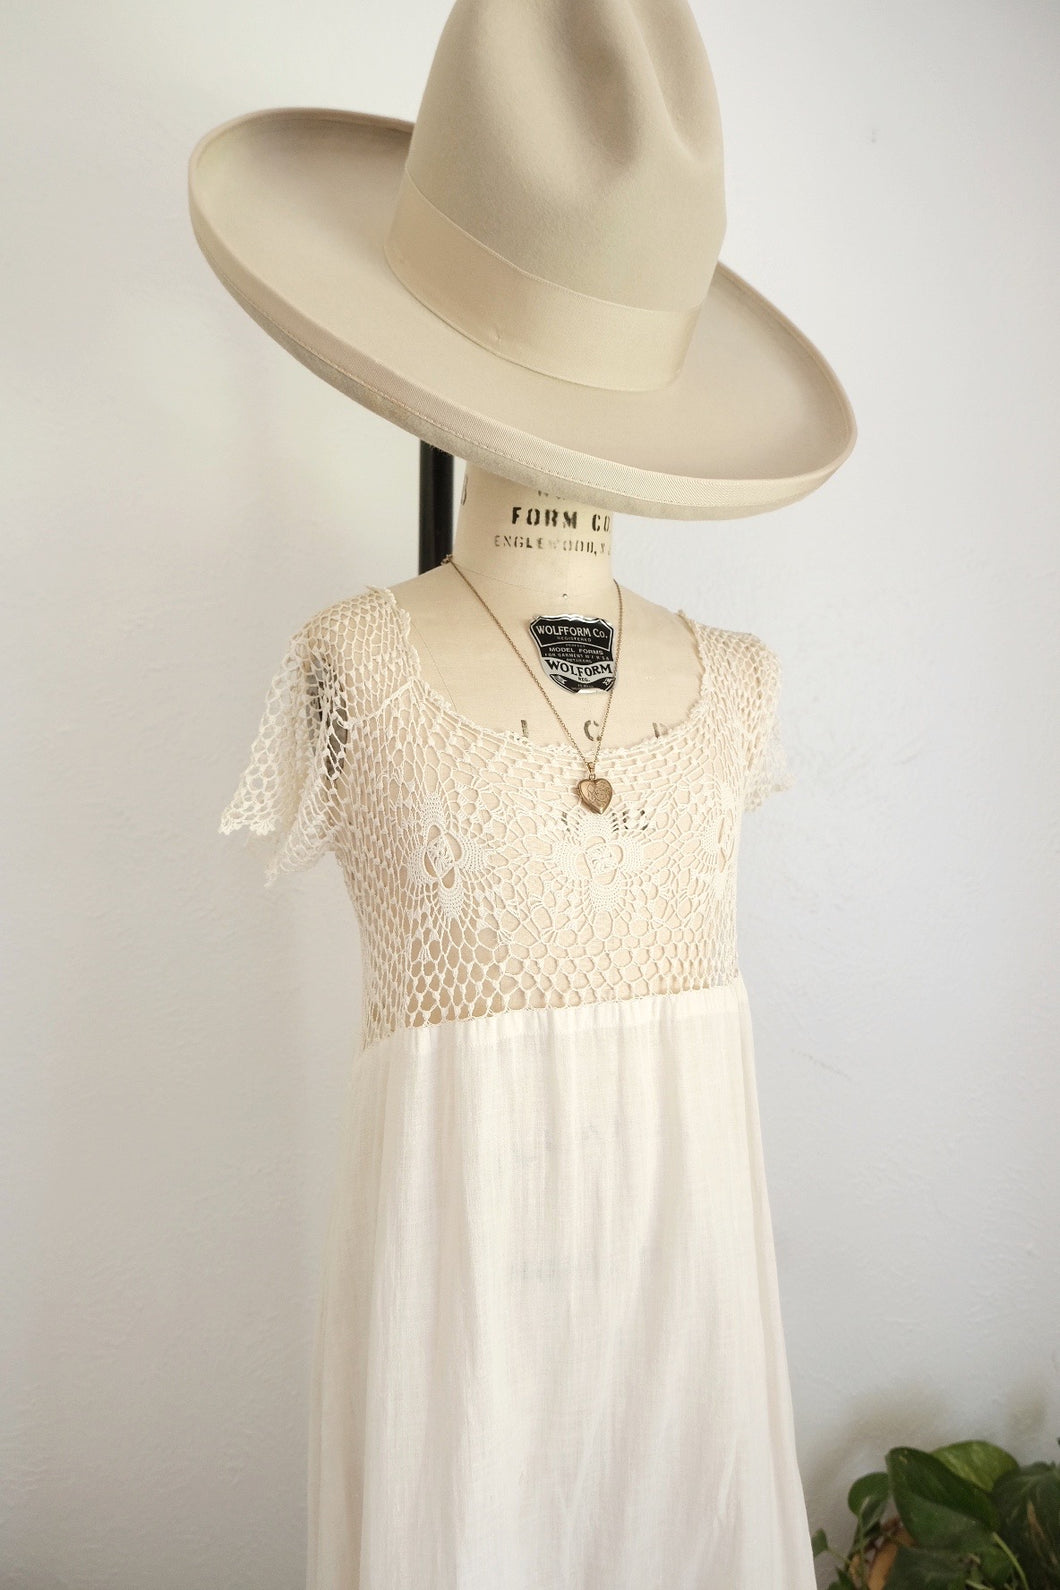 Antique crochet cotton dress